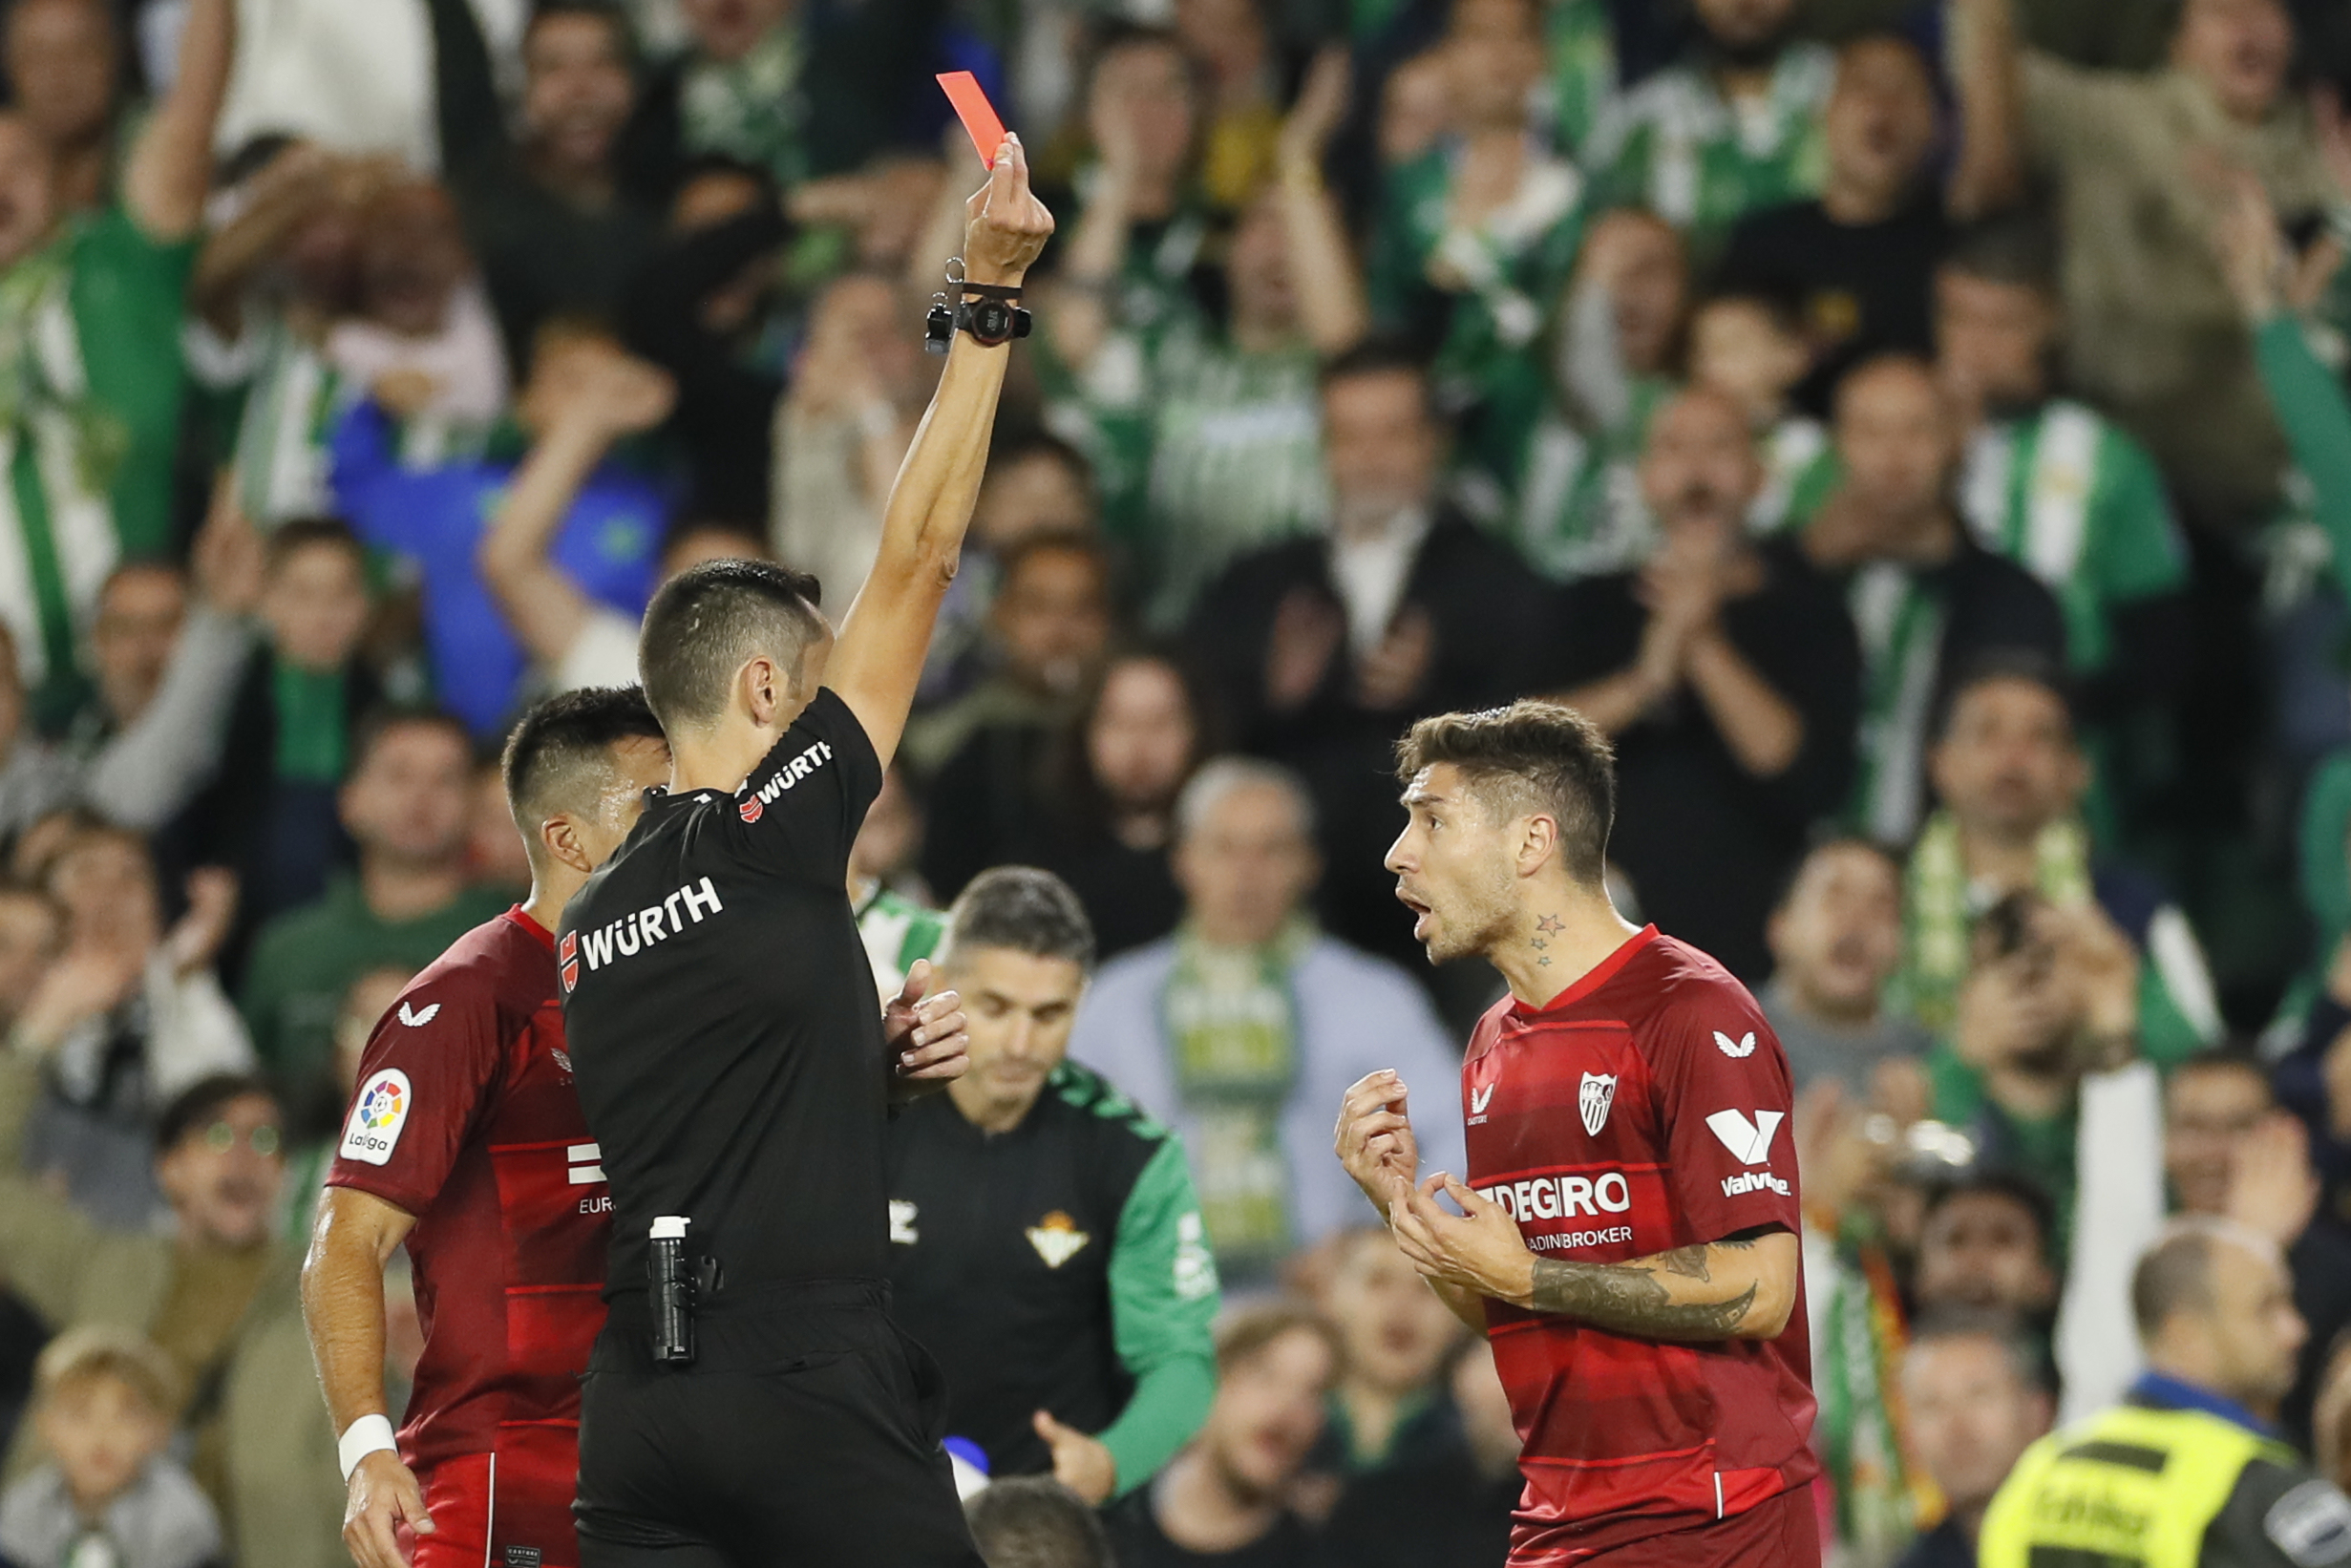 Un �rbitro muestra la tarjeta roja a Montiel durante un partido del Sevilla.